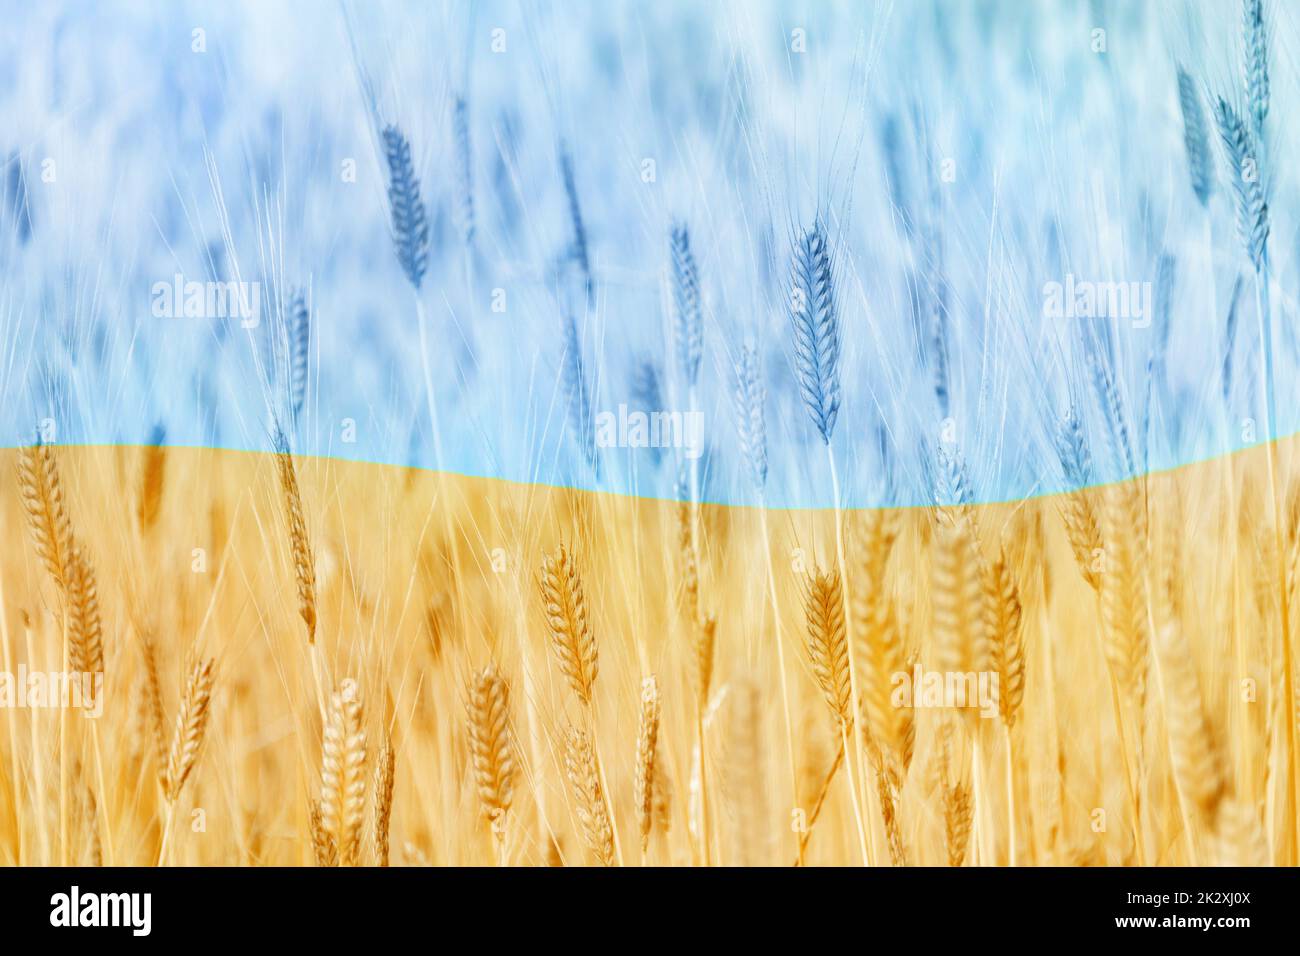 Entschärft Fokus auf abstrakte patriotische Flagge der Ukraine aus dem Feld der goldenen Ähren des Weizens. Landwirtschaft der unabhängigen Ukraine. Tag der Nationalflagge Stockfoto